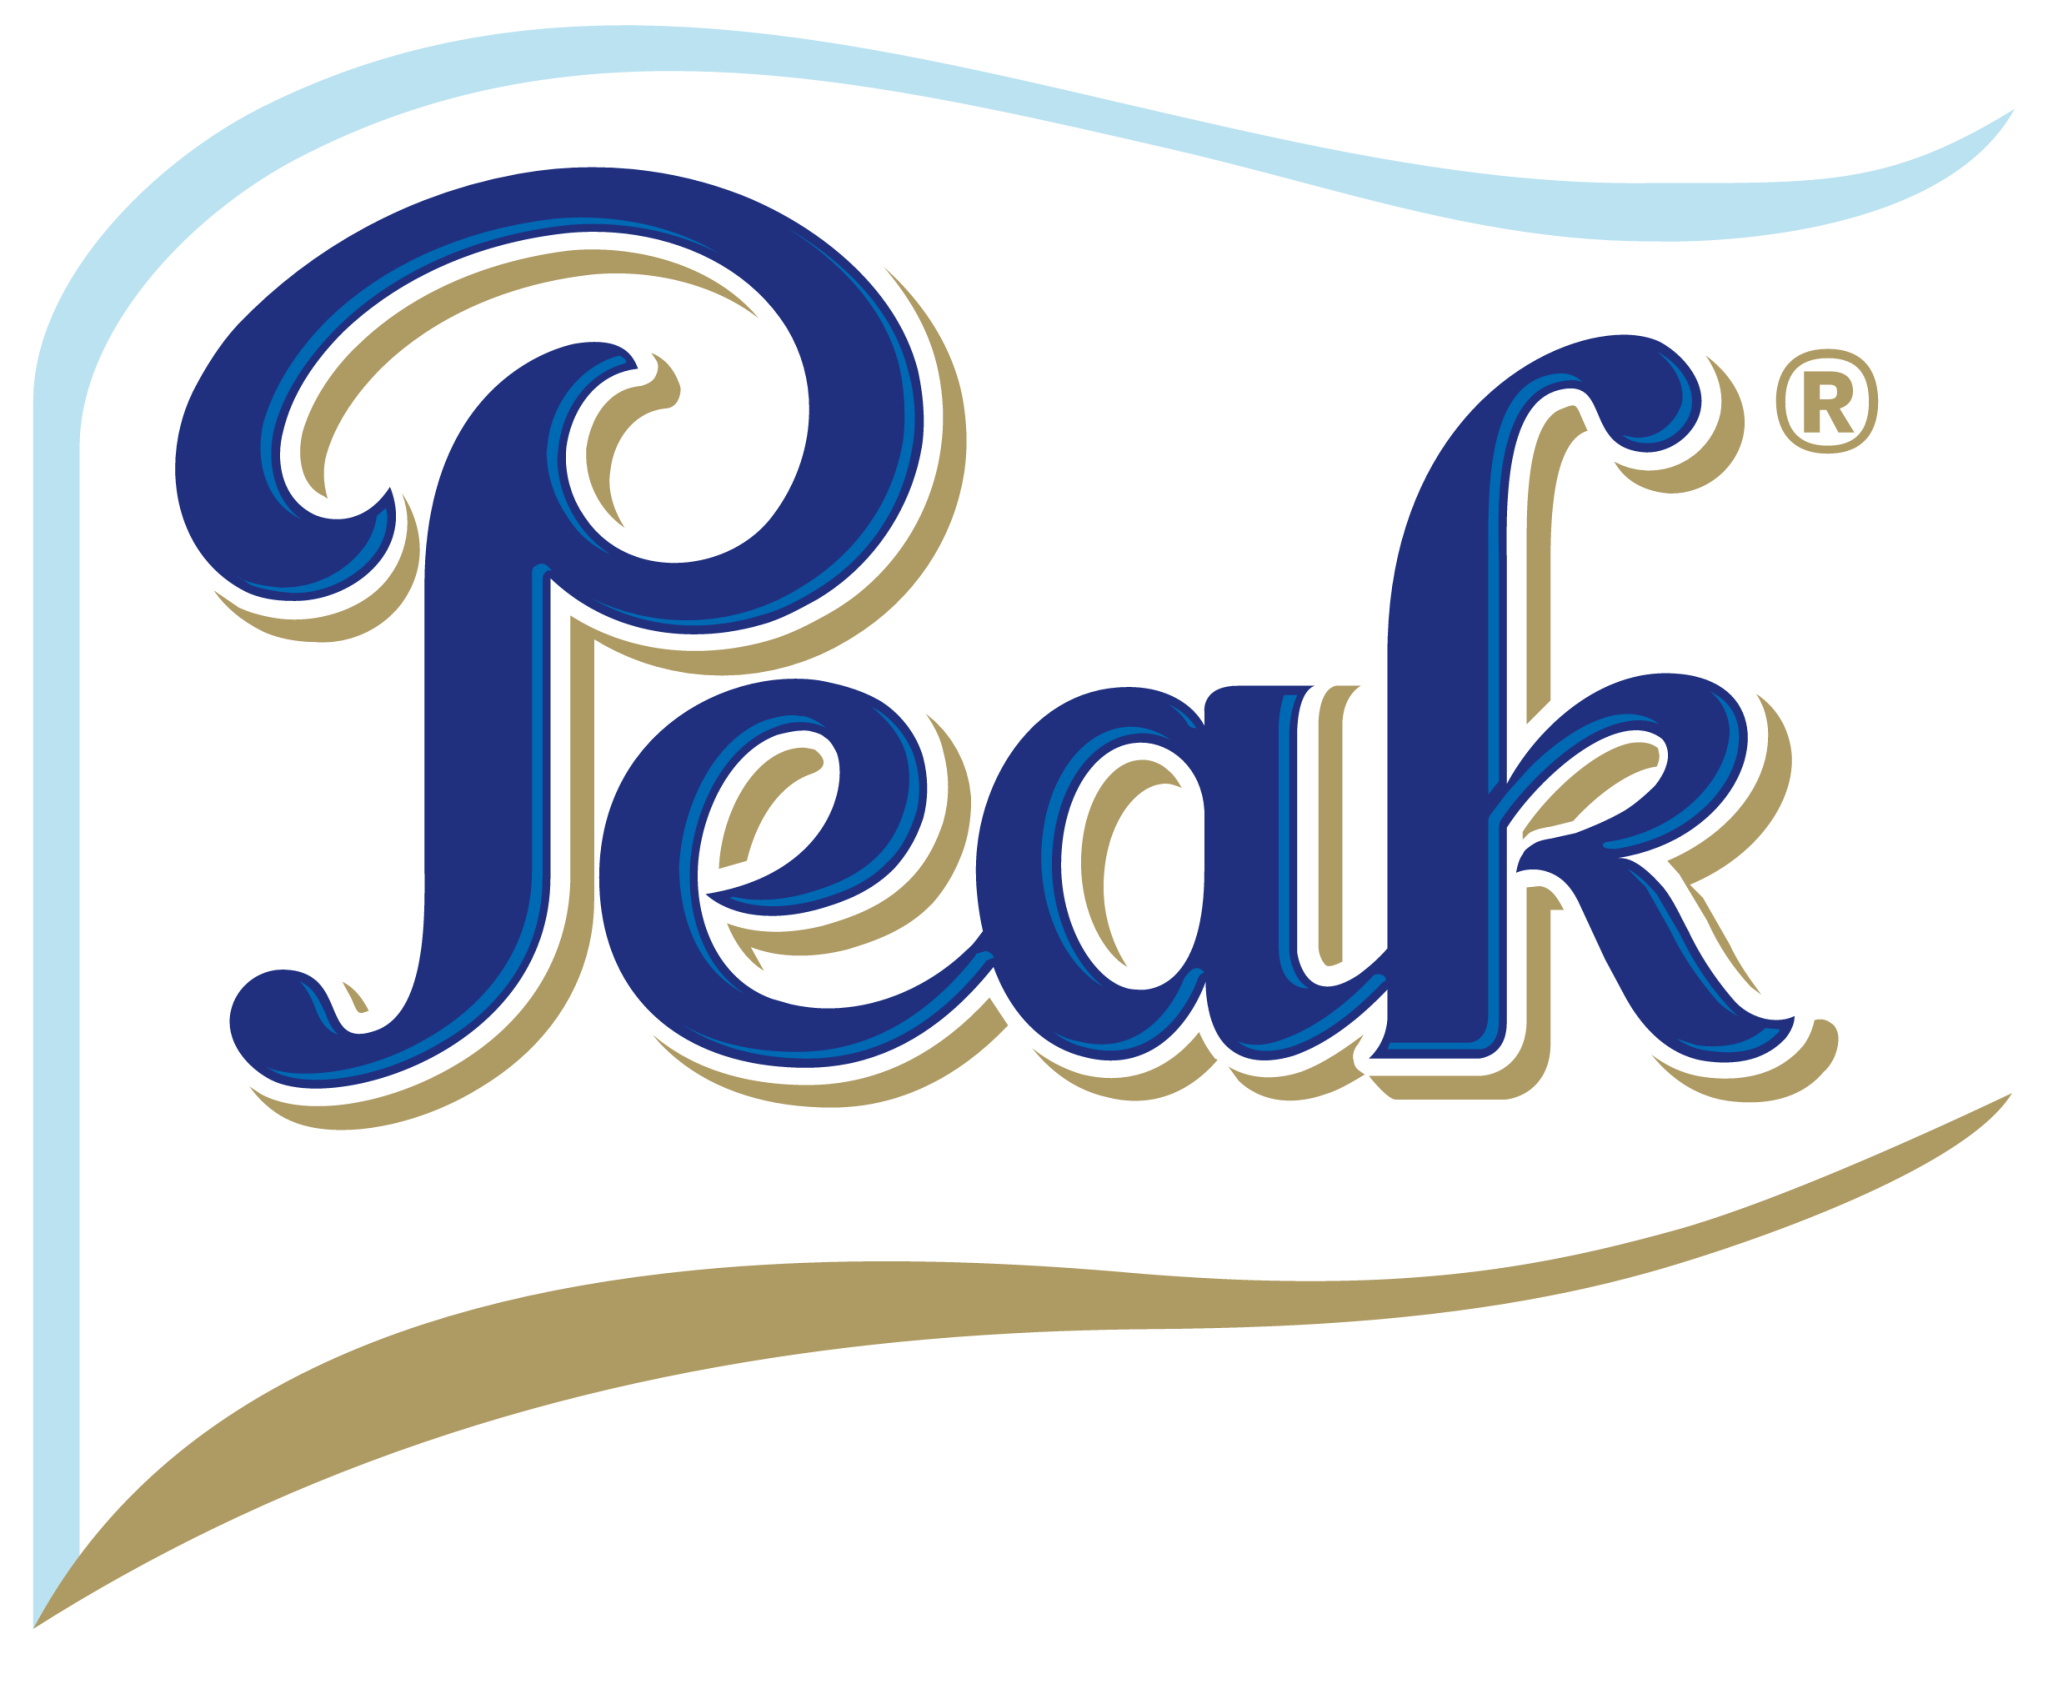 Peak Milk icon